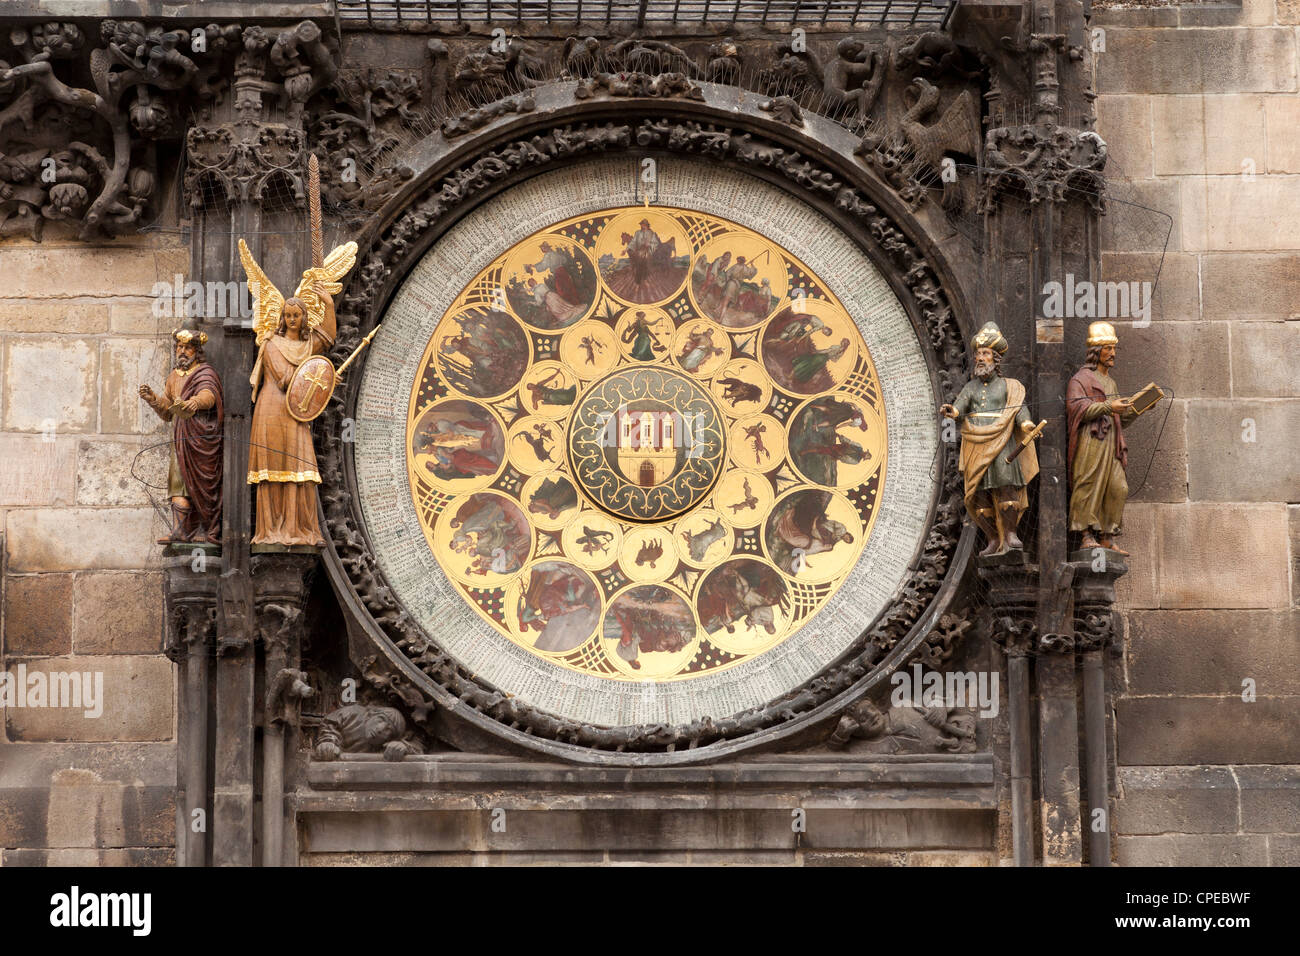 Calendario su l'orologio astronomico. Praga, Repubblica Ceca. Foto Stock